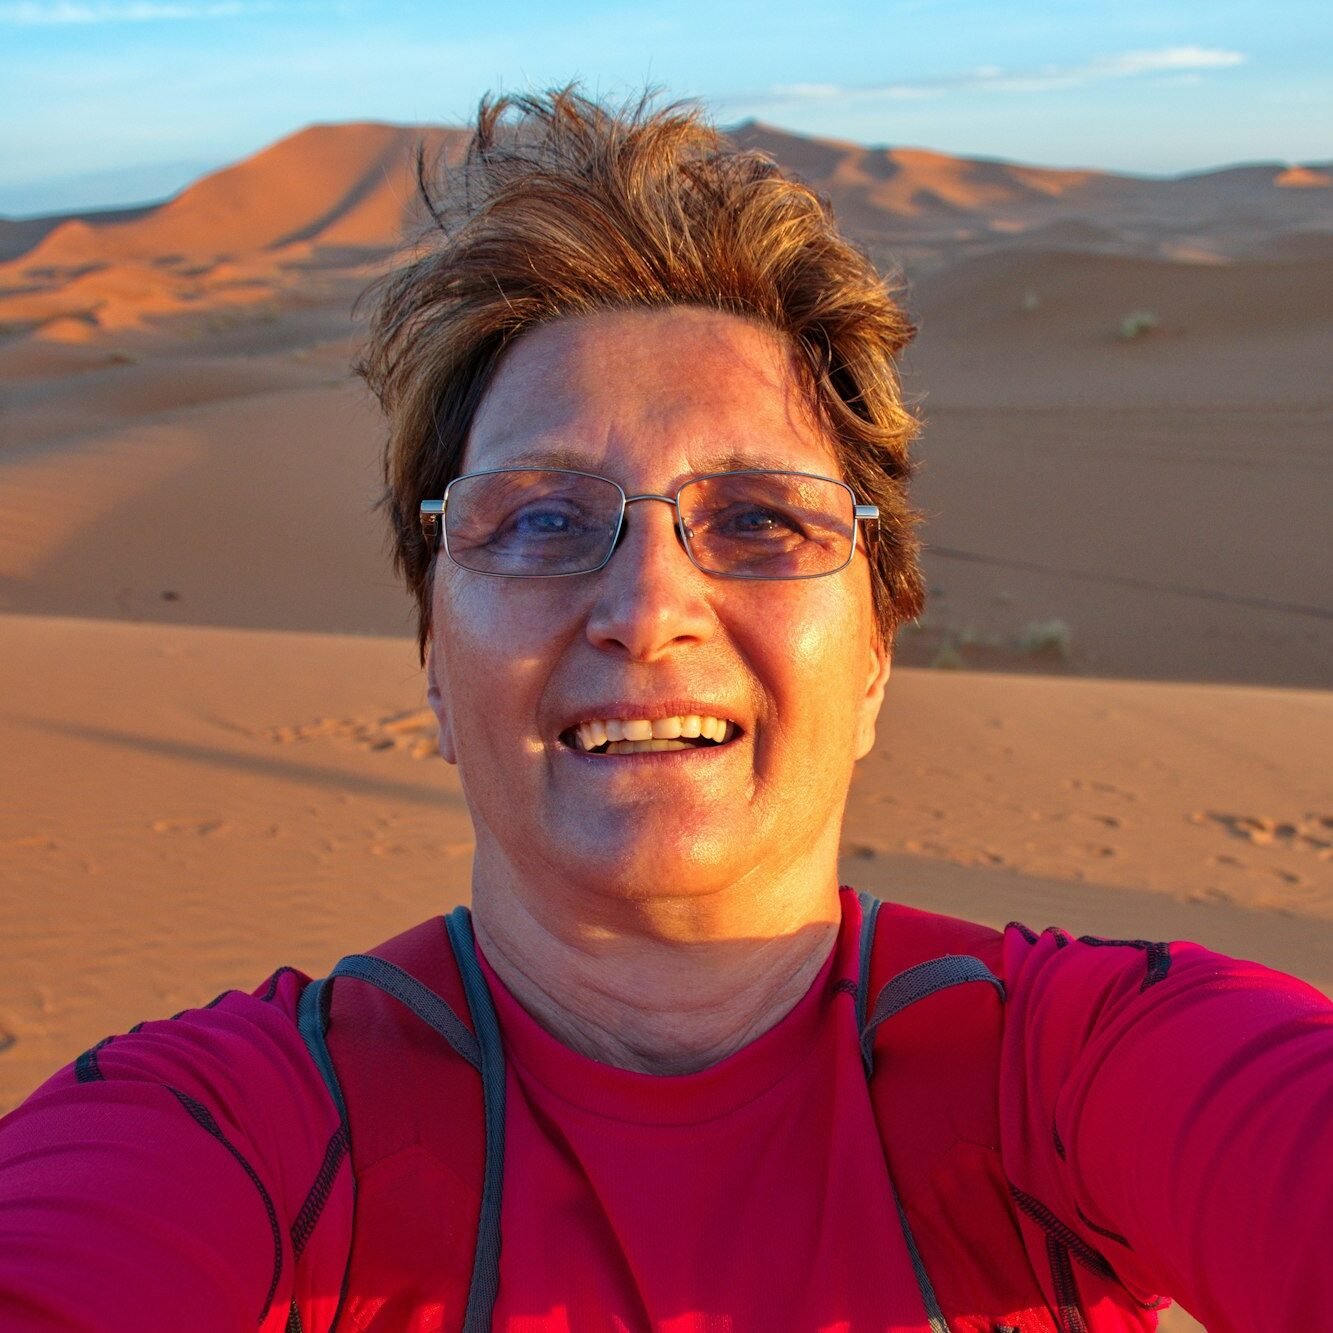 Selfie of the mature woman in Sahara desert